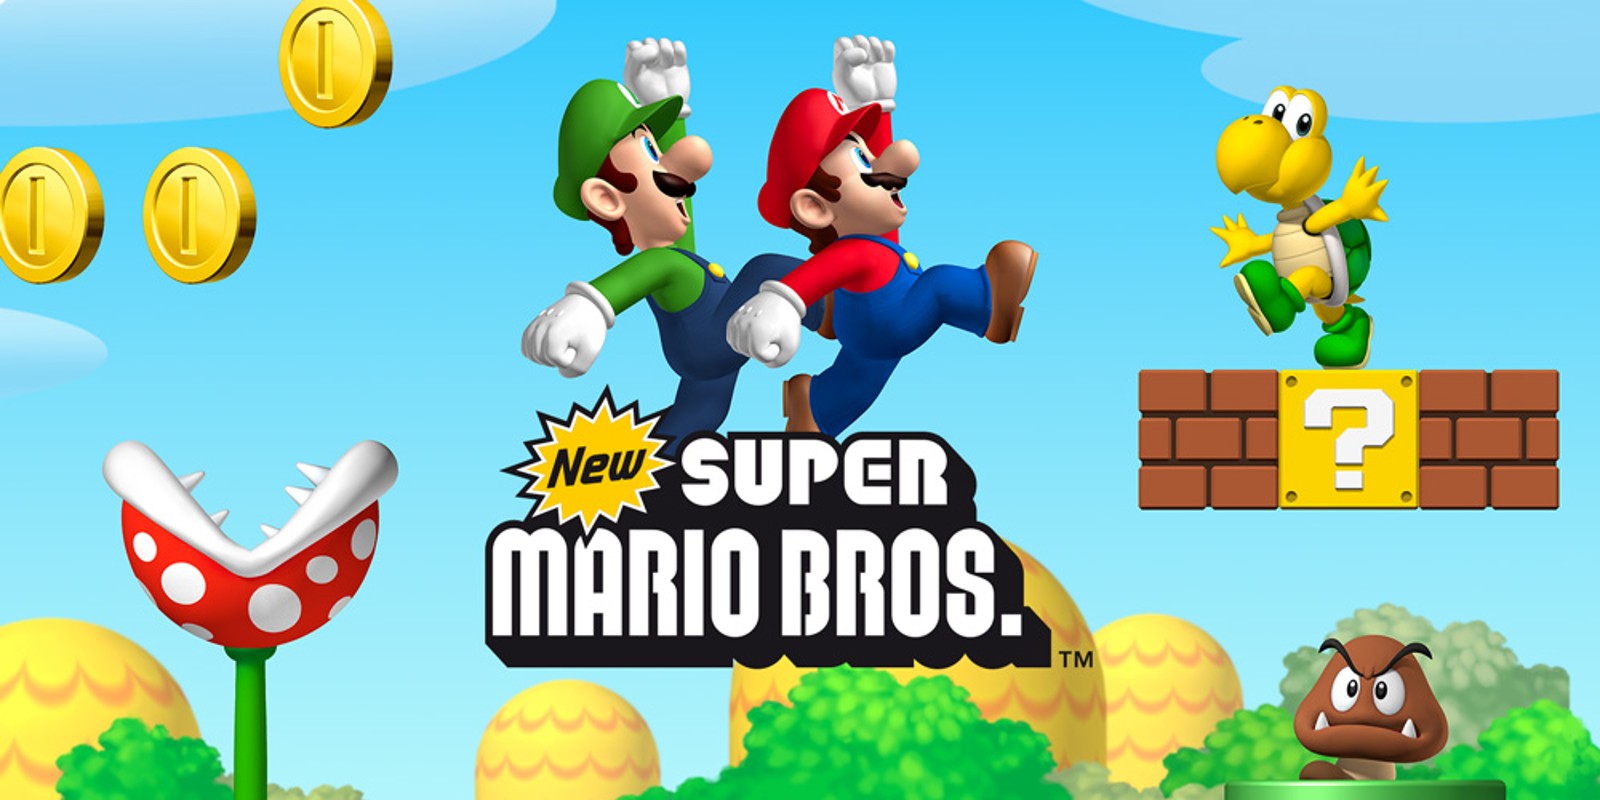 Mario bros nintendo ds - Die besten Mario bros nintendo ds unter die Lupe genommen!